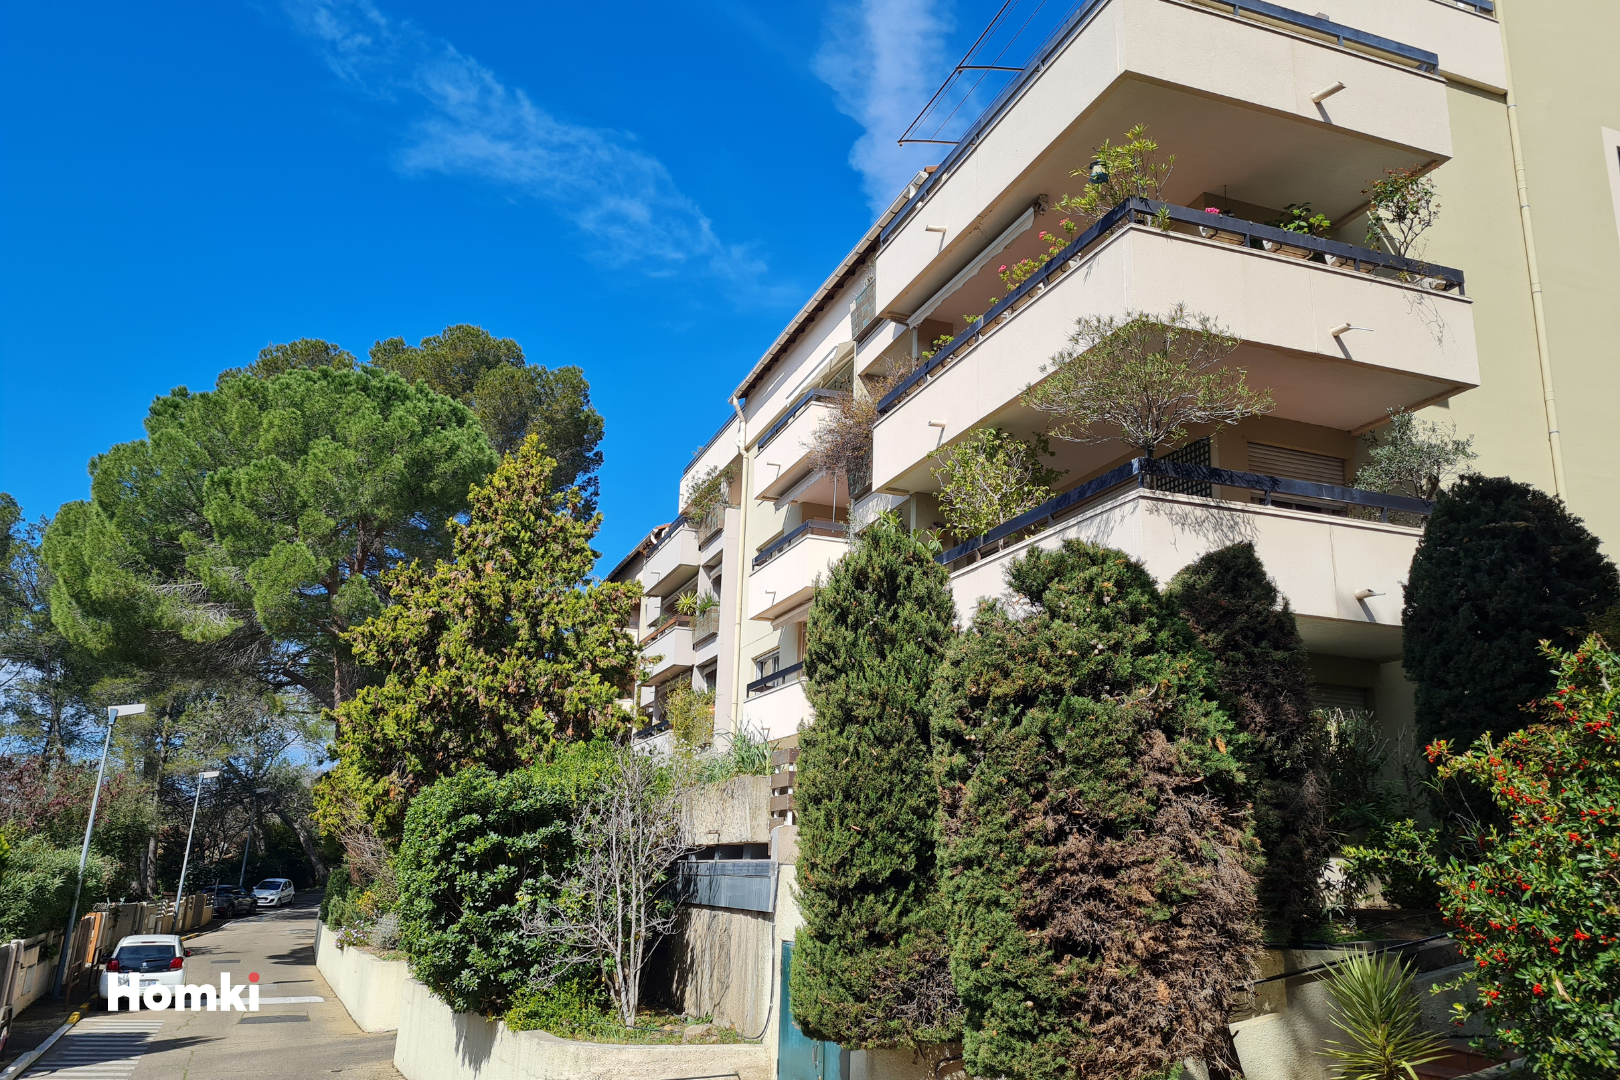 Homki - Vente Appartement  de 71.0 m² à Nîmes 30900